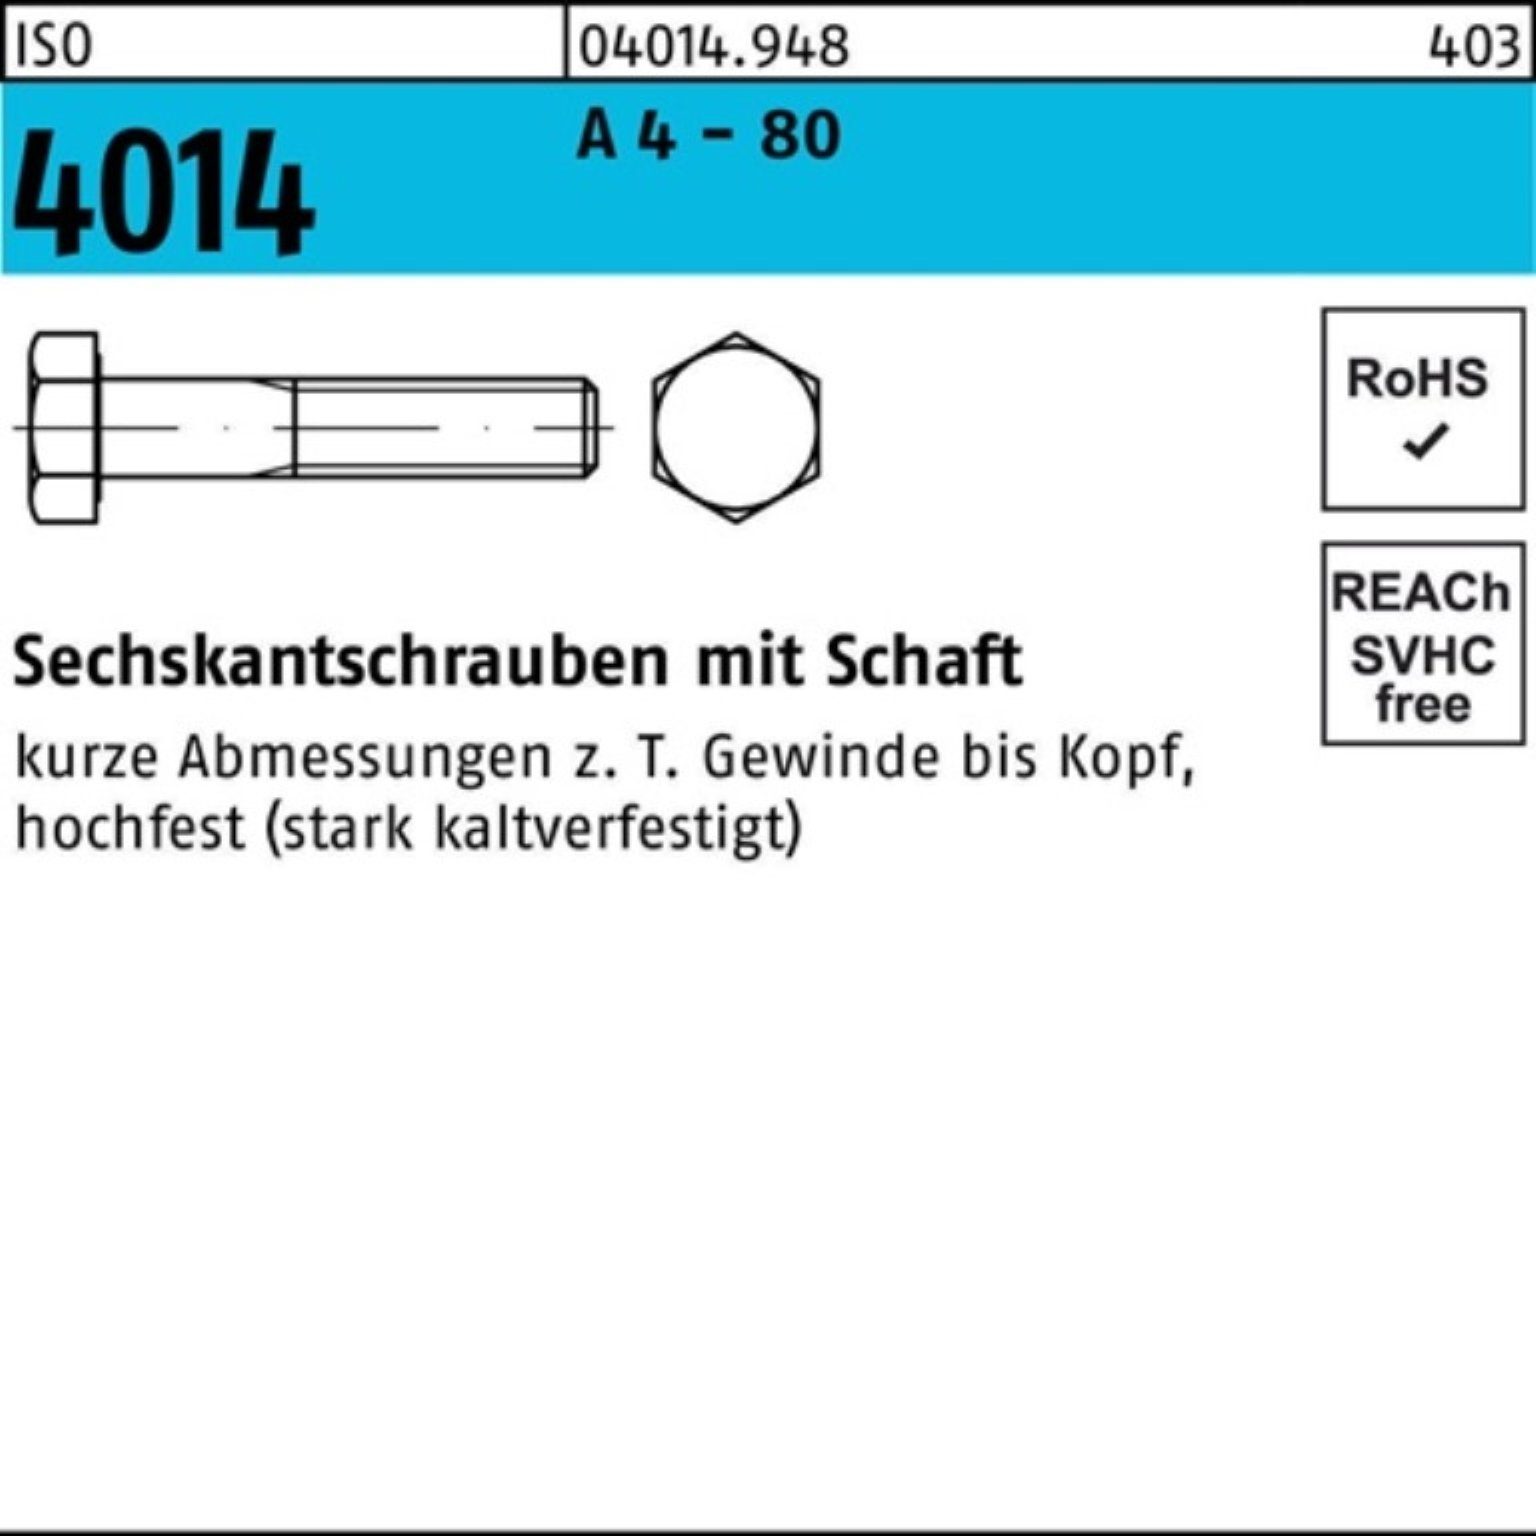 Bufab Sechskantschraube 100er Pack Sechskantschraube ISO 4014 Schaft M20x 100 A 4 - 80 1 Stüc